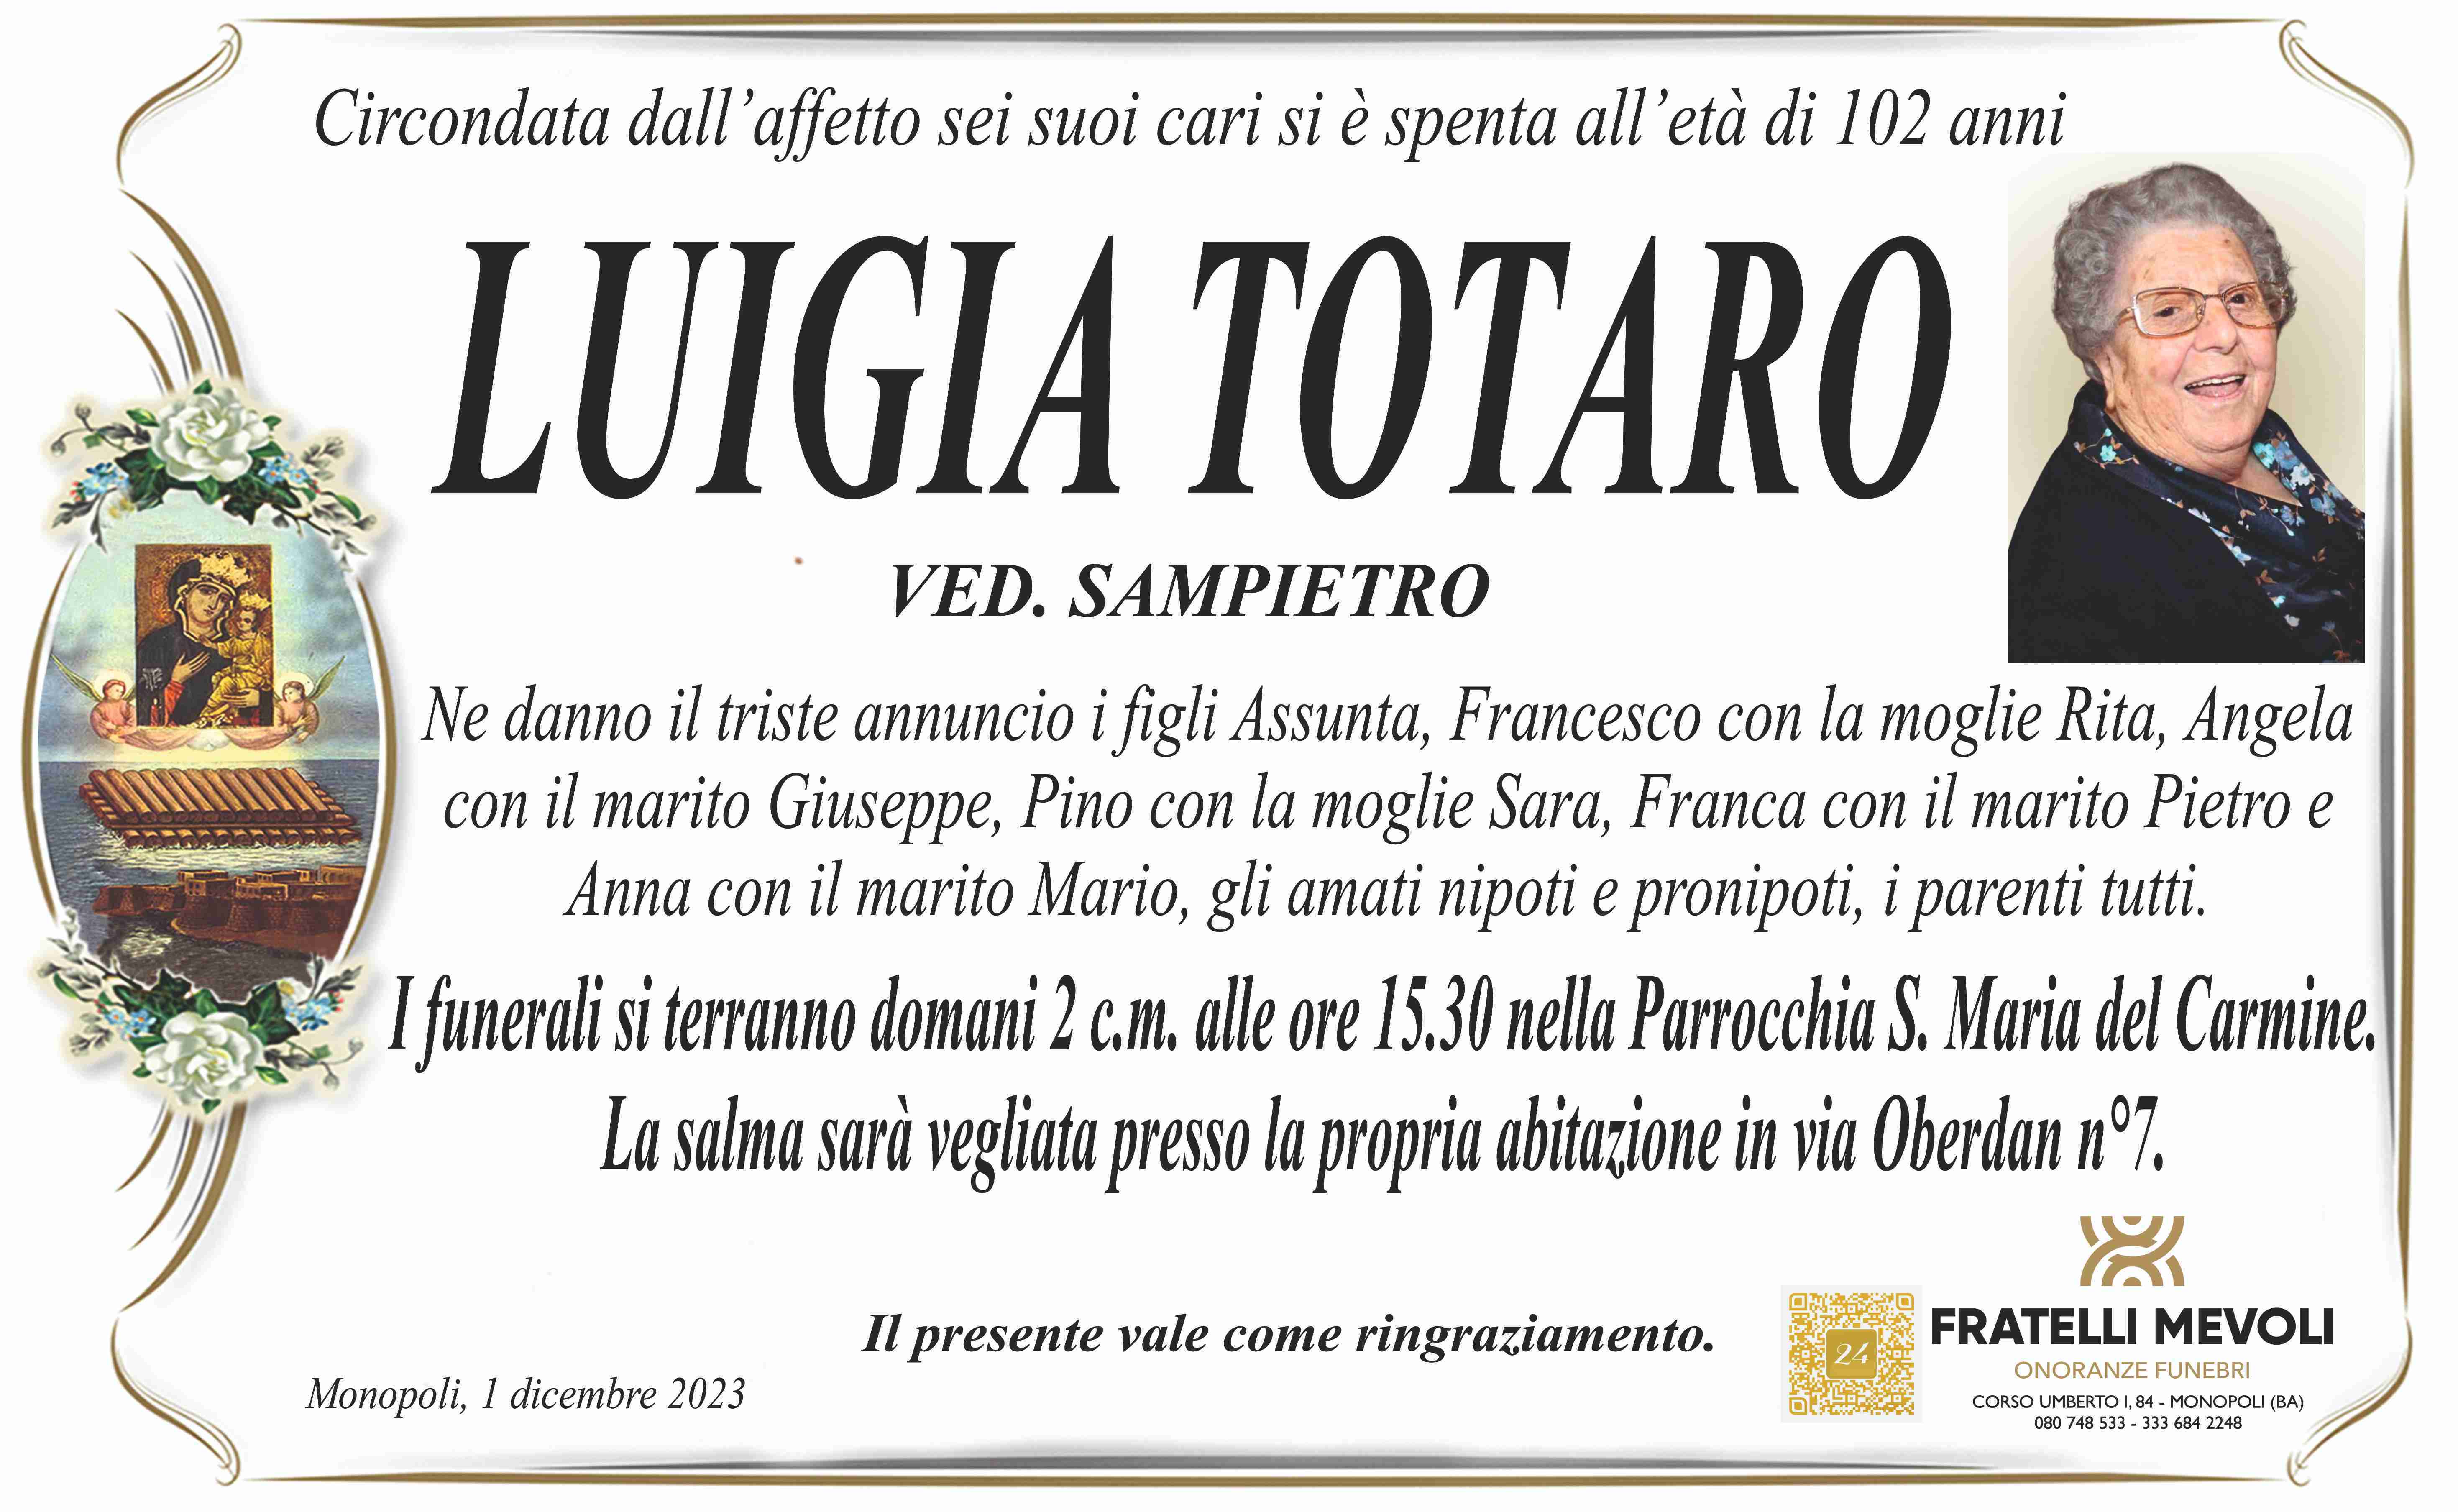 Luigia Totaro